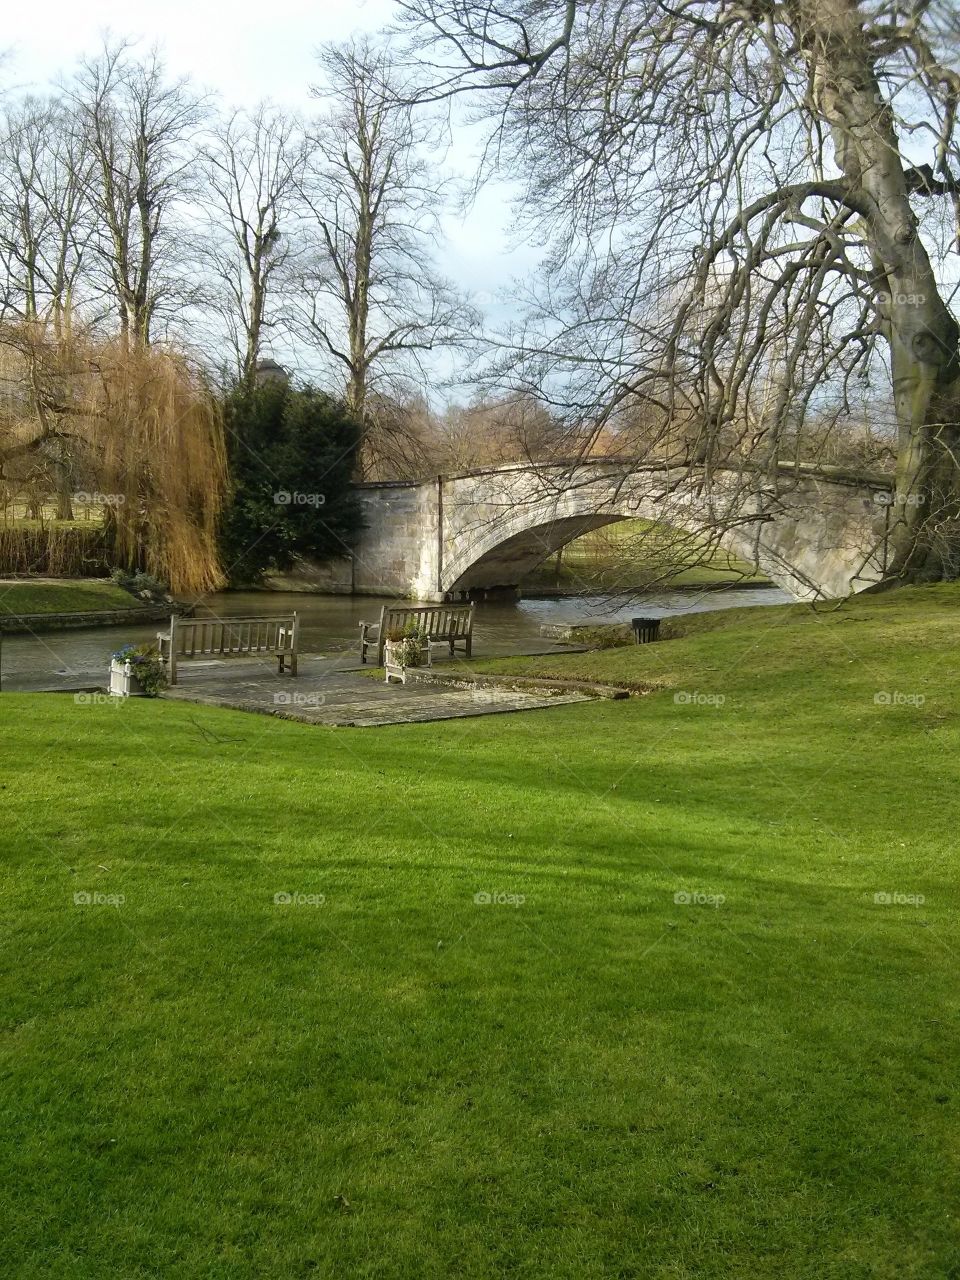 Bridge in Cambridge